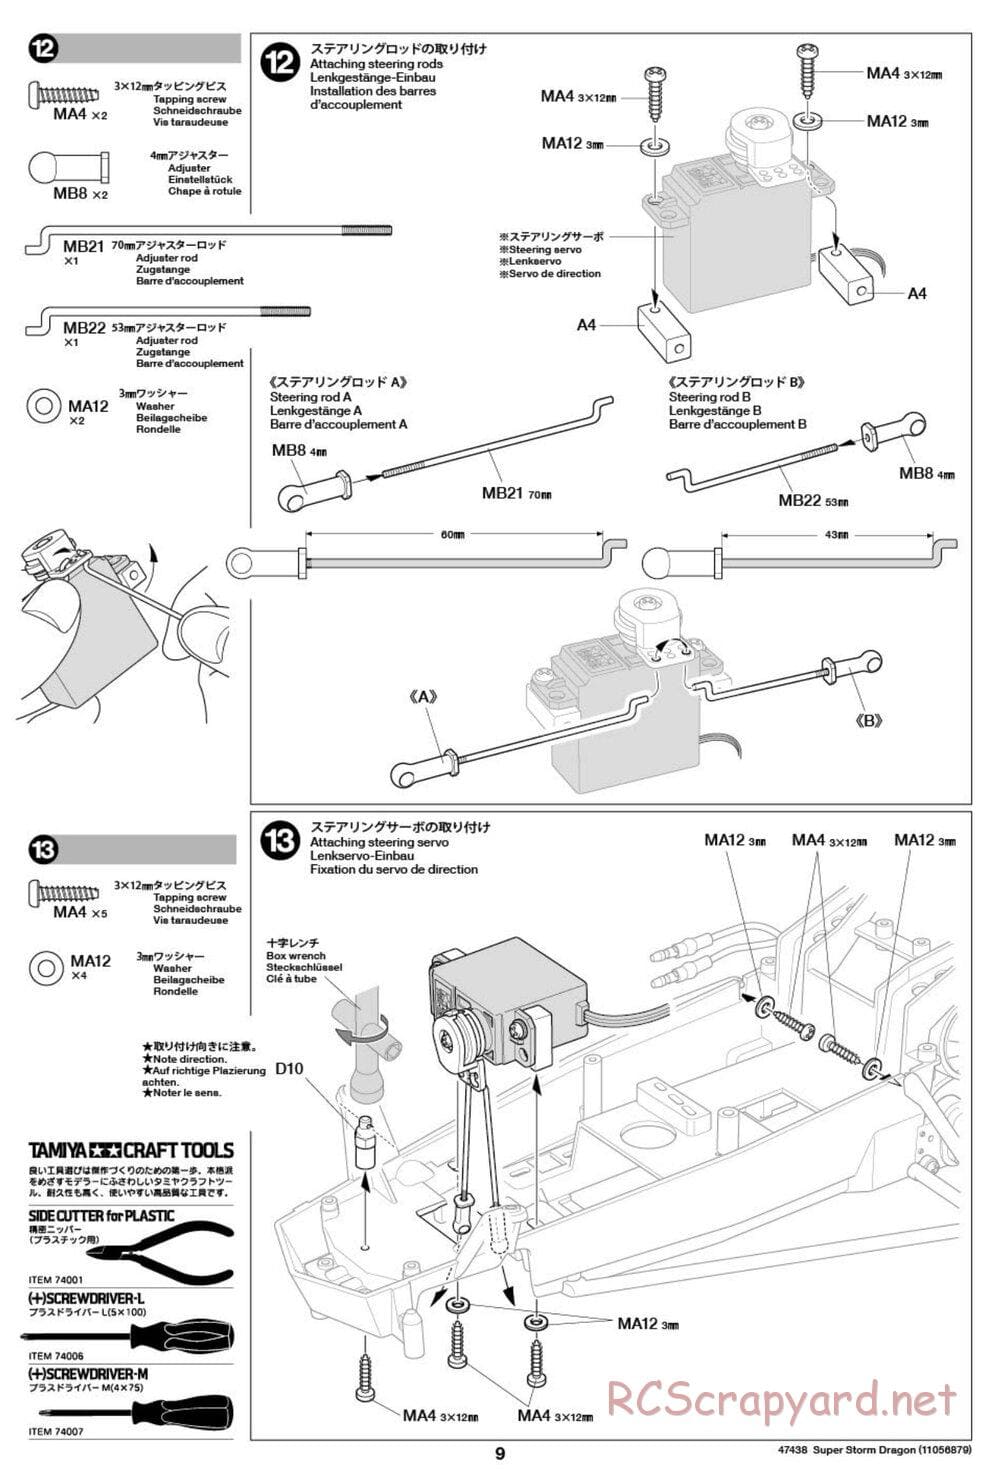 Tamiya - Super Storm Dragon Chassis - Manual - Page 9